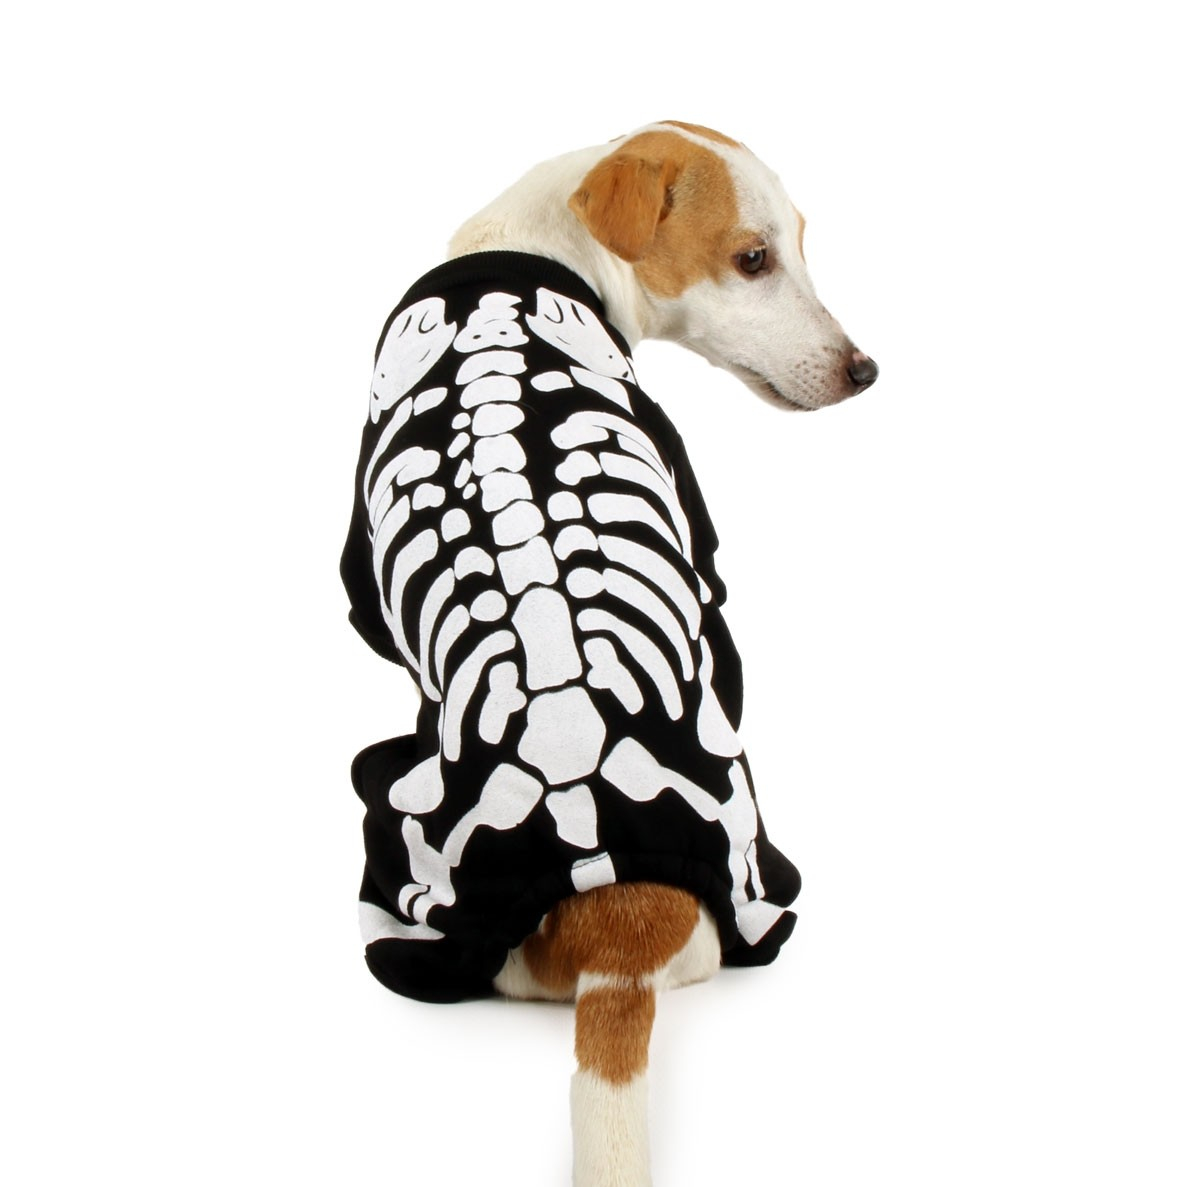 Disfraz de esqueleto para perros Zolia Festive